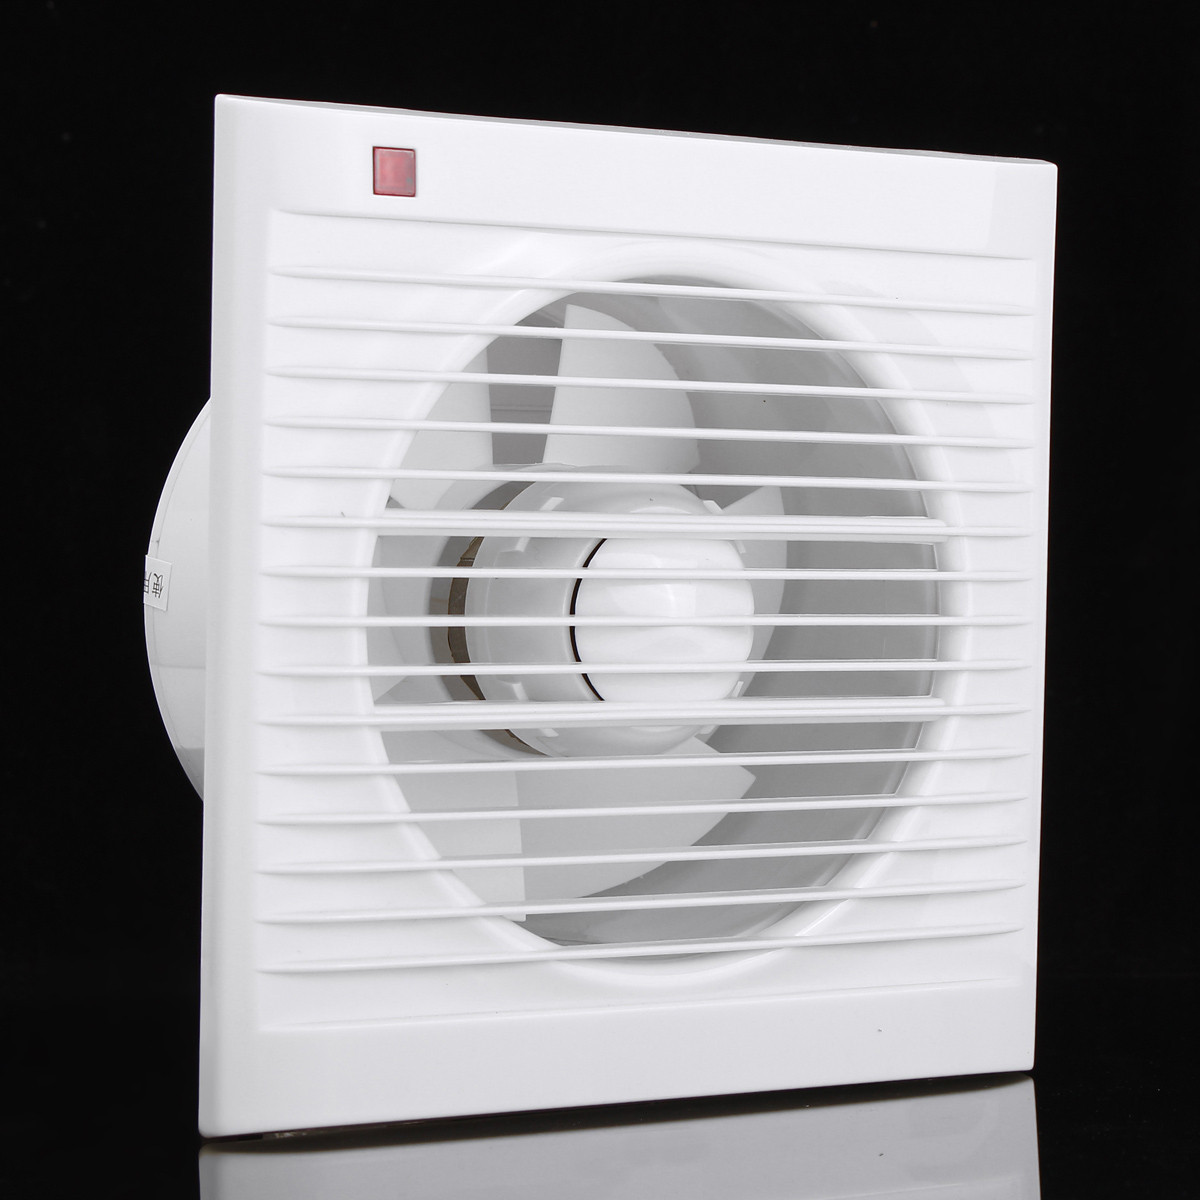 Fan first. Вытяжной вентилятор “Dusel” DV-150. Fan Volcano Mini вентилятор вытяжной. Вентилятор вытяжной оконный с обратным клапаном. Вытяжка для ванной комнаты с вентилятором Эра.